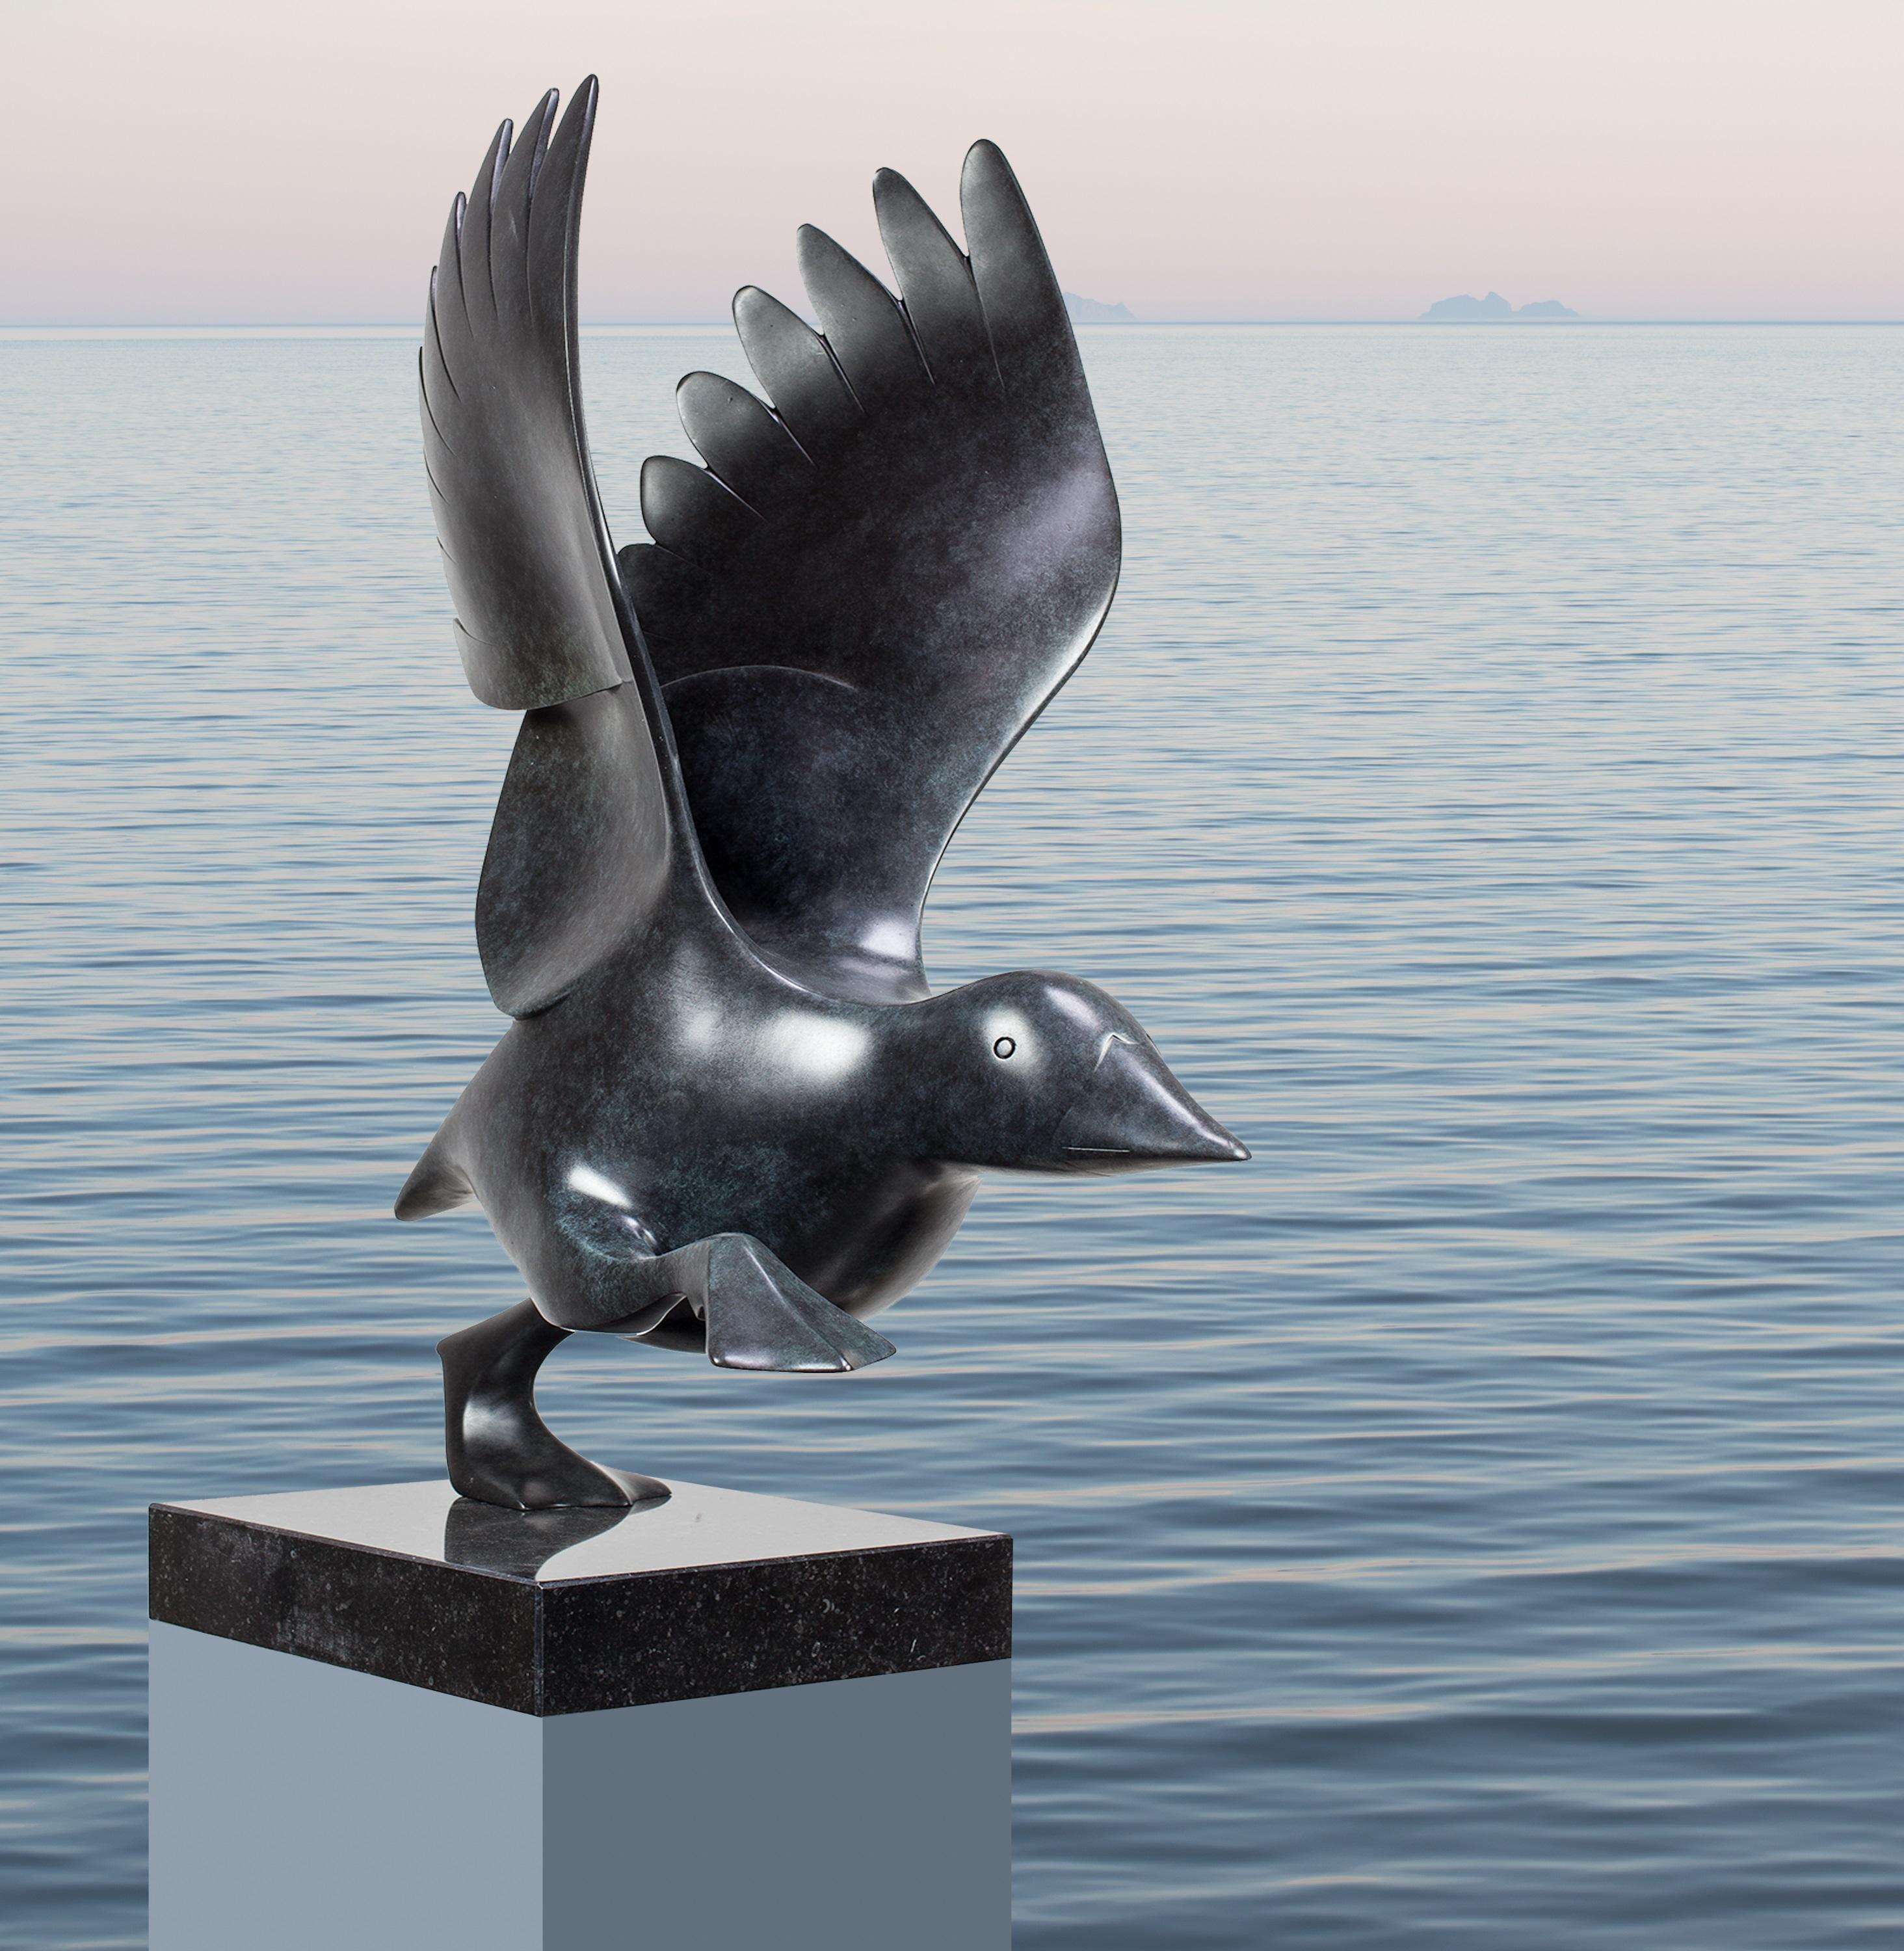 Rennende Eend no. 2 Running Duck Bronze Animal Sculpture Contemporary - Gold Figurative Sculpture by Evert den Hartog